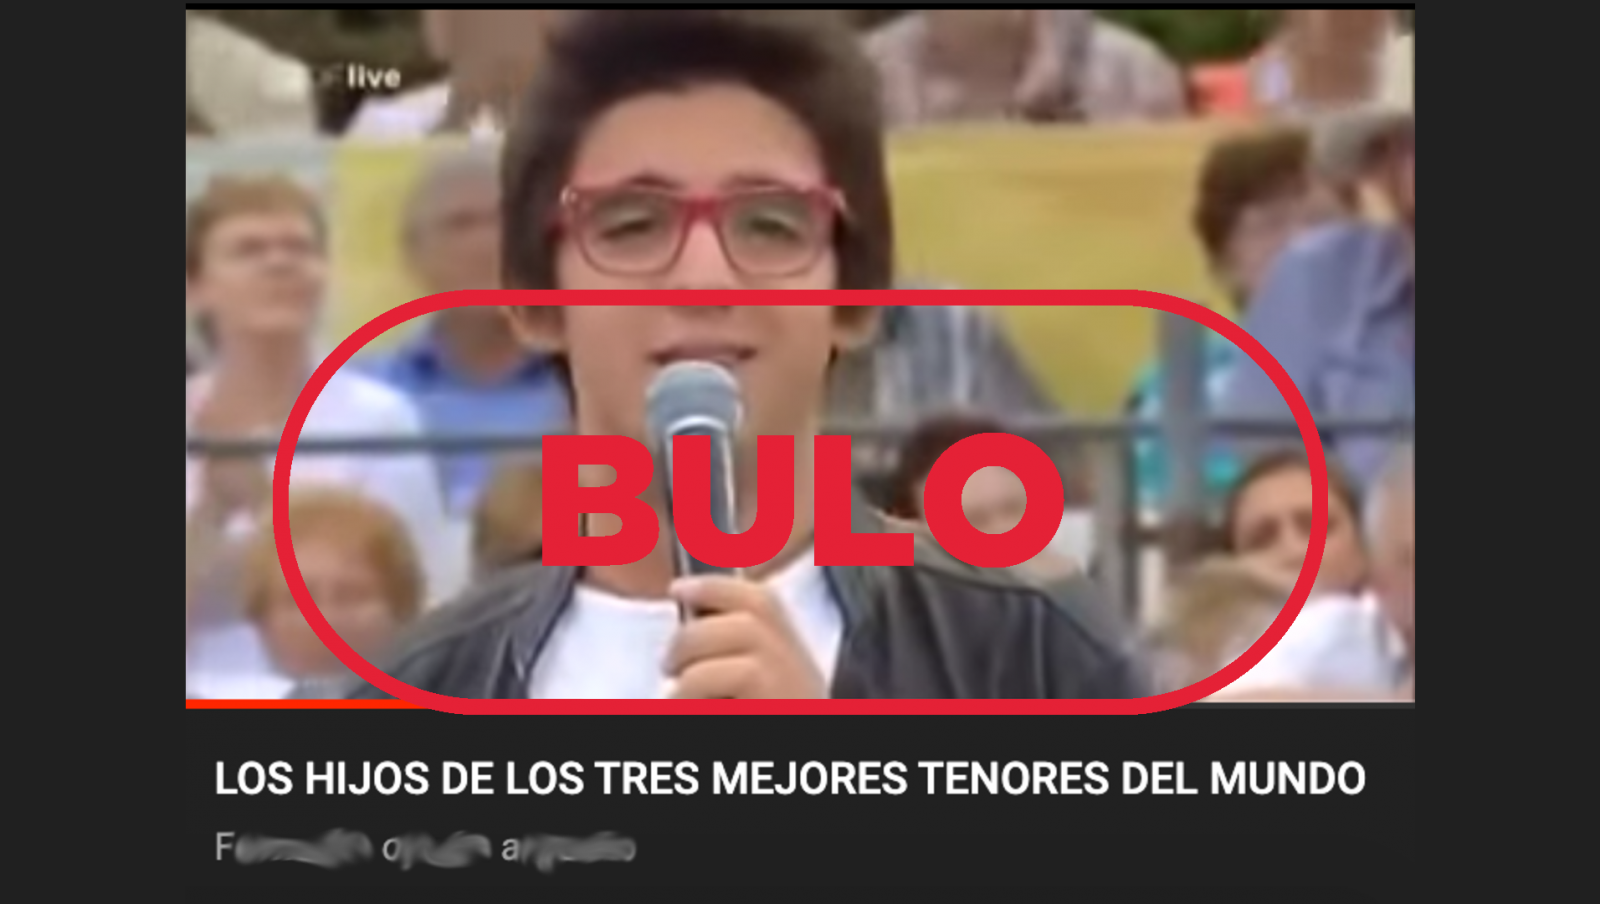 Vídeo falaz en la plataforma YouTube en español